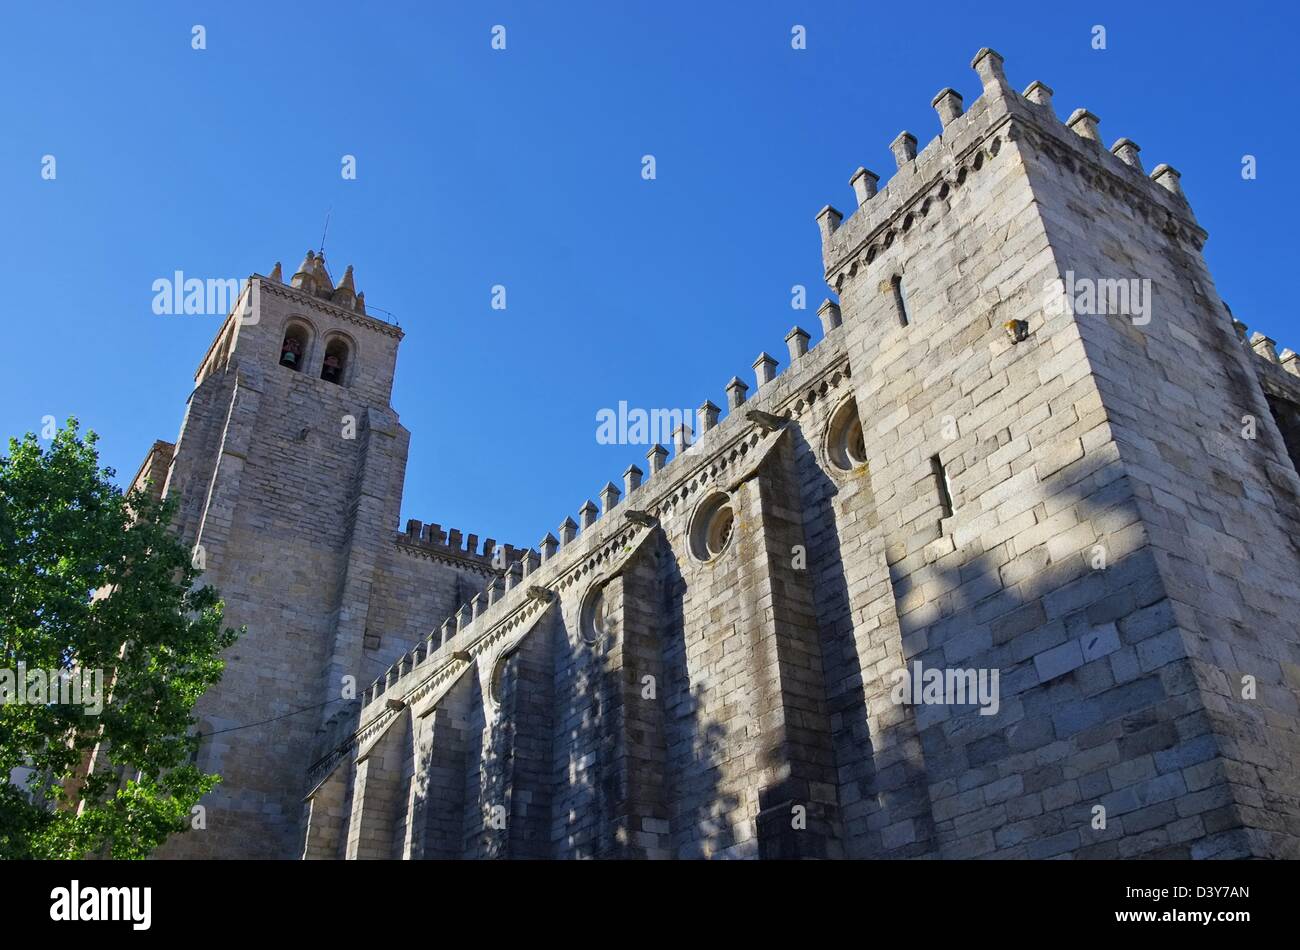 La cathédrale d'Evora Evora Kathedrale - 02 Banque D'Images